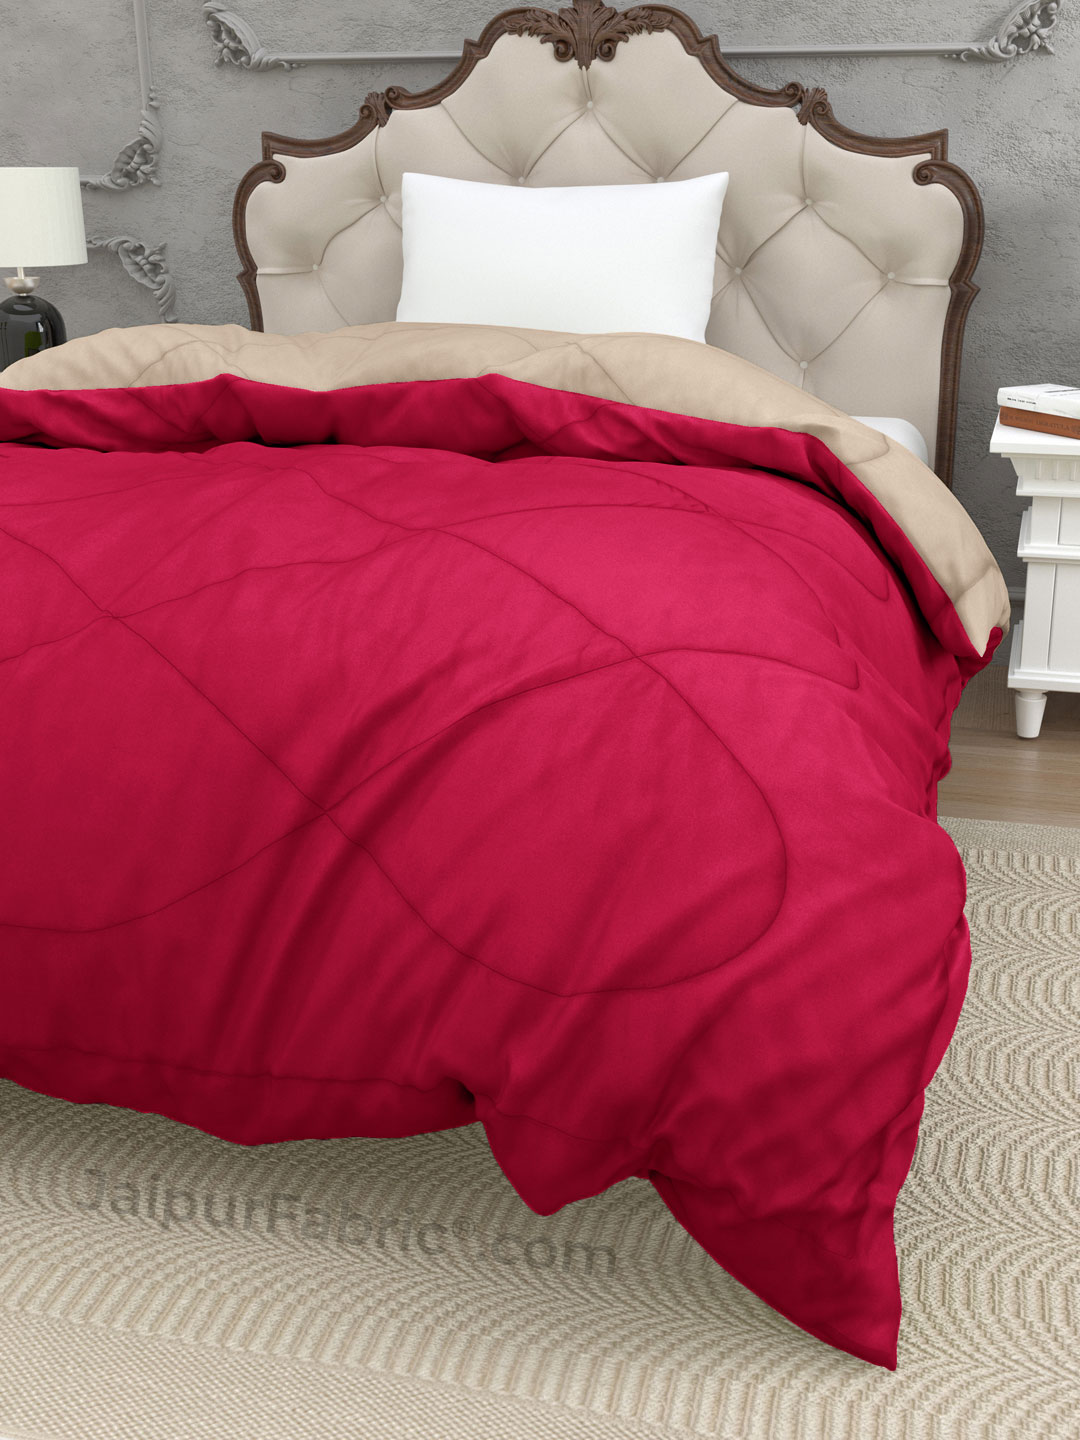 Smoke White Dark Pink Single Bed Comforter